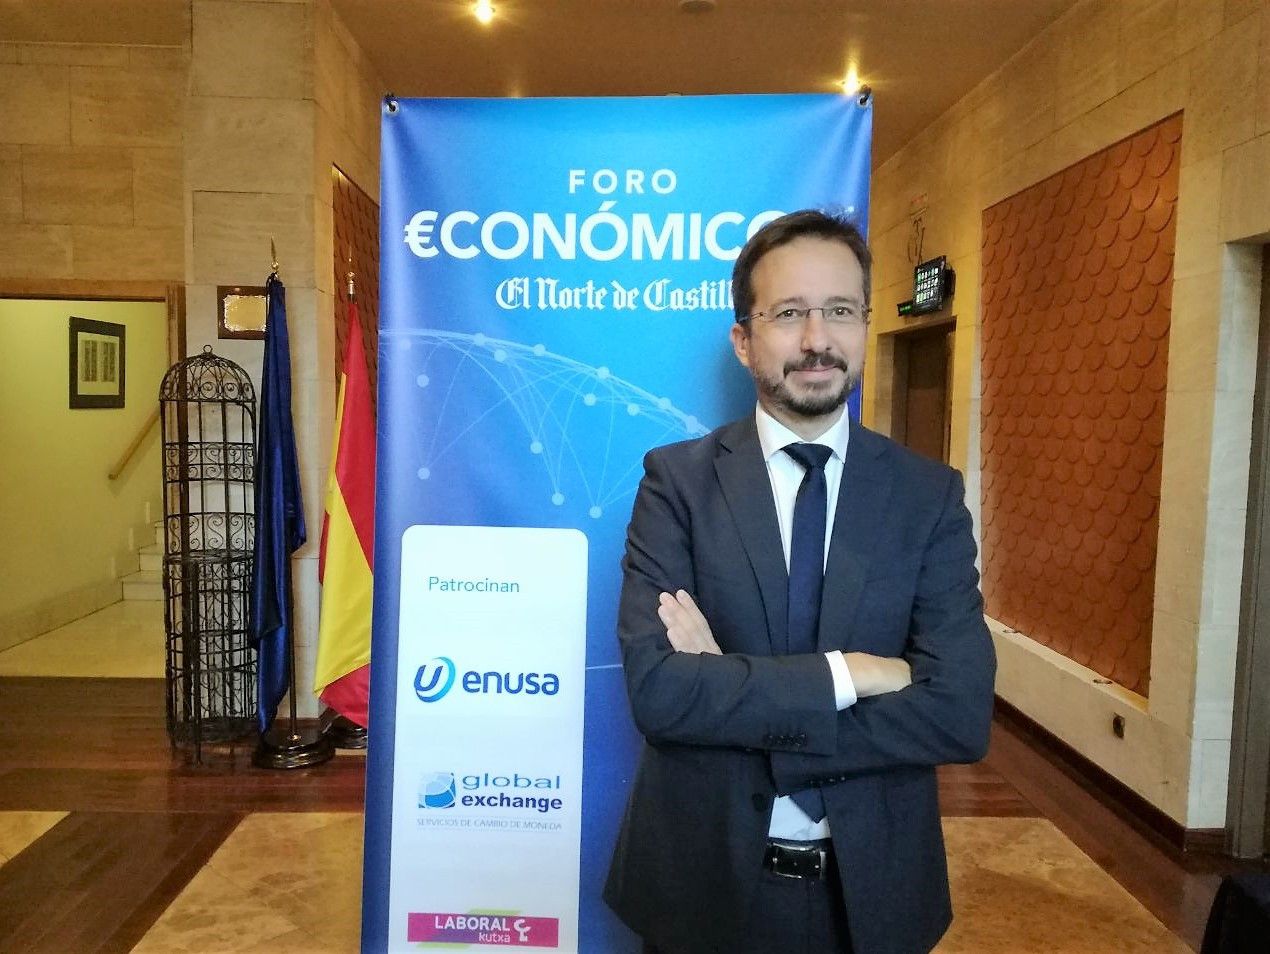  Foro económico norte de castilla José Ignacio Conde (5) 